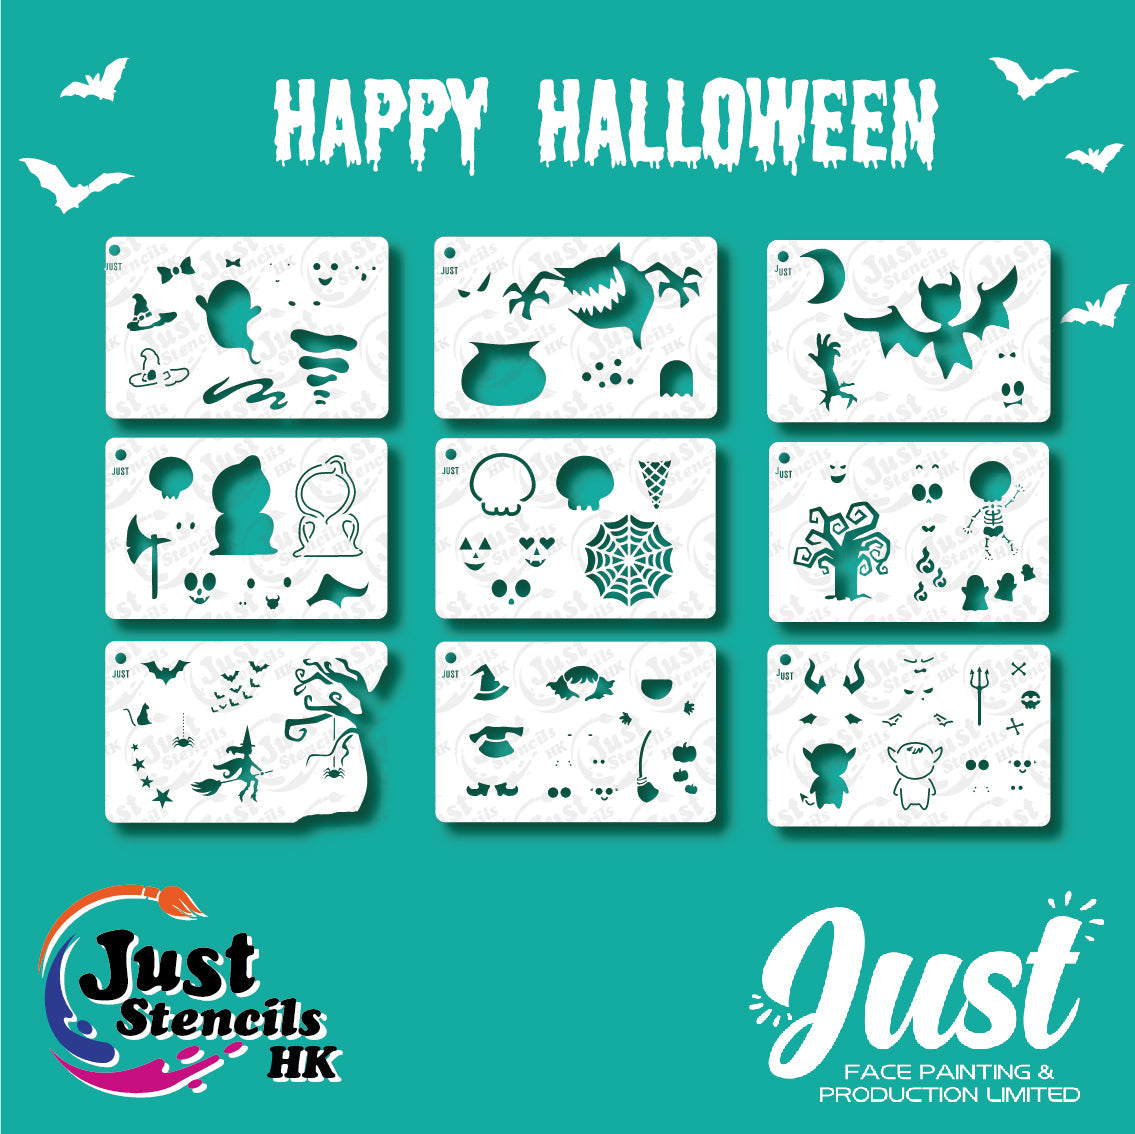 Just Stencils - Halloween Stencils - HA03 - Scary Bat (1 no / 9 nos per set)